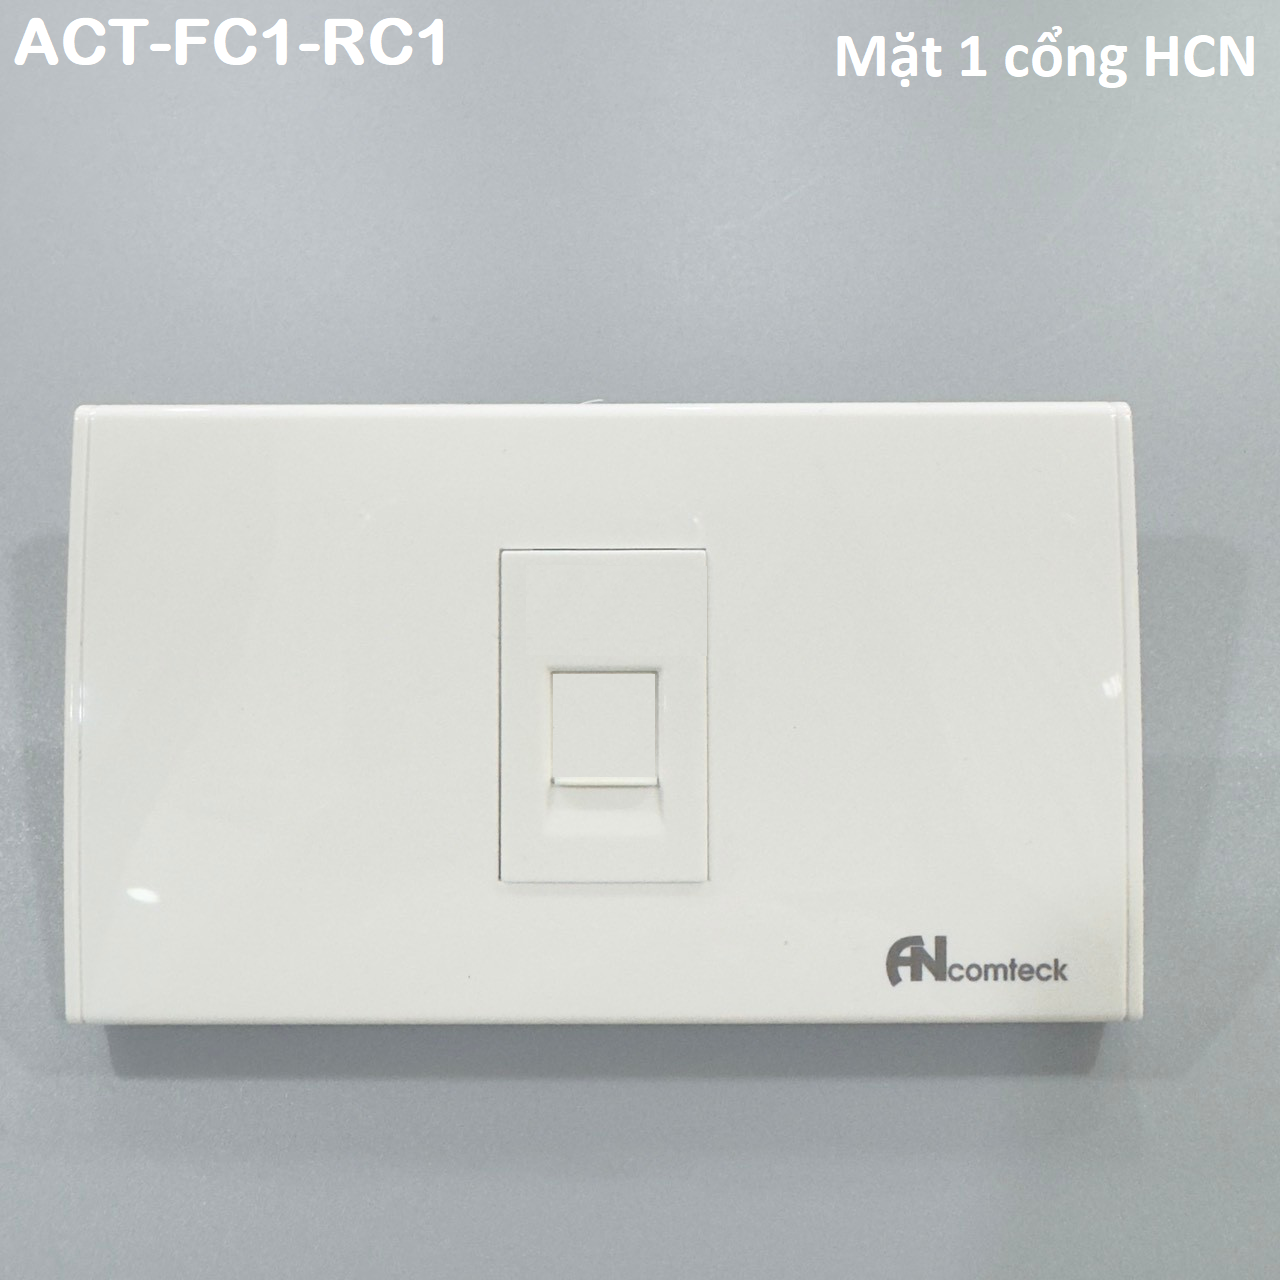 Mặt 1 cổng Ancomteck , mã ACT-FC1-RC1